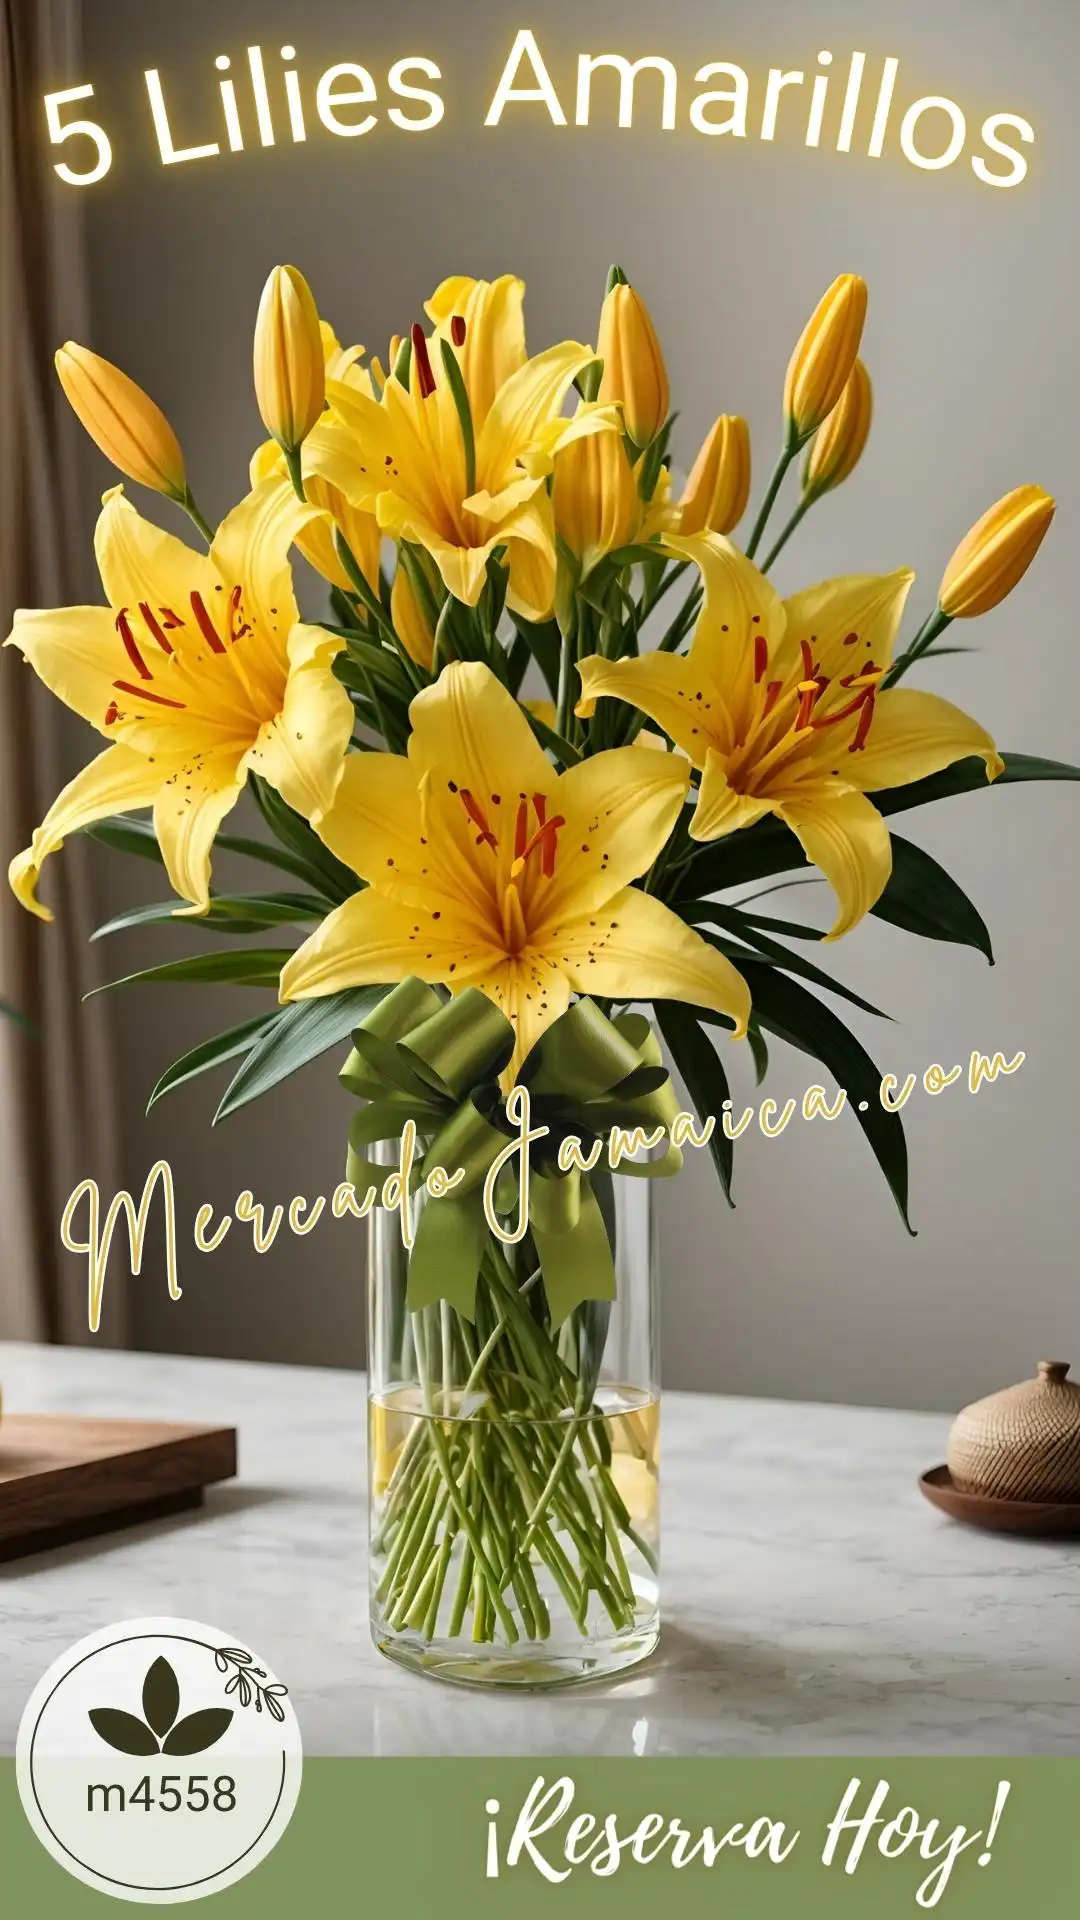 Arreglo floral con 5 lilies amarillas